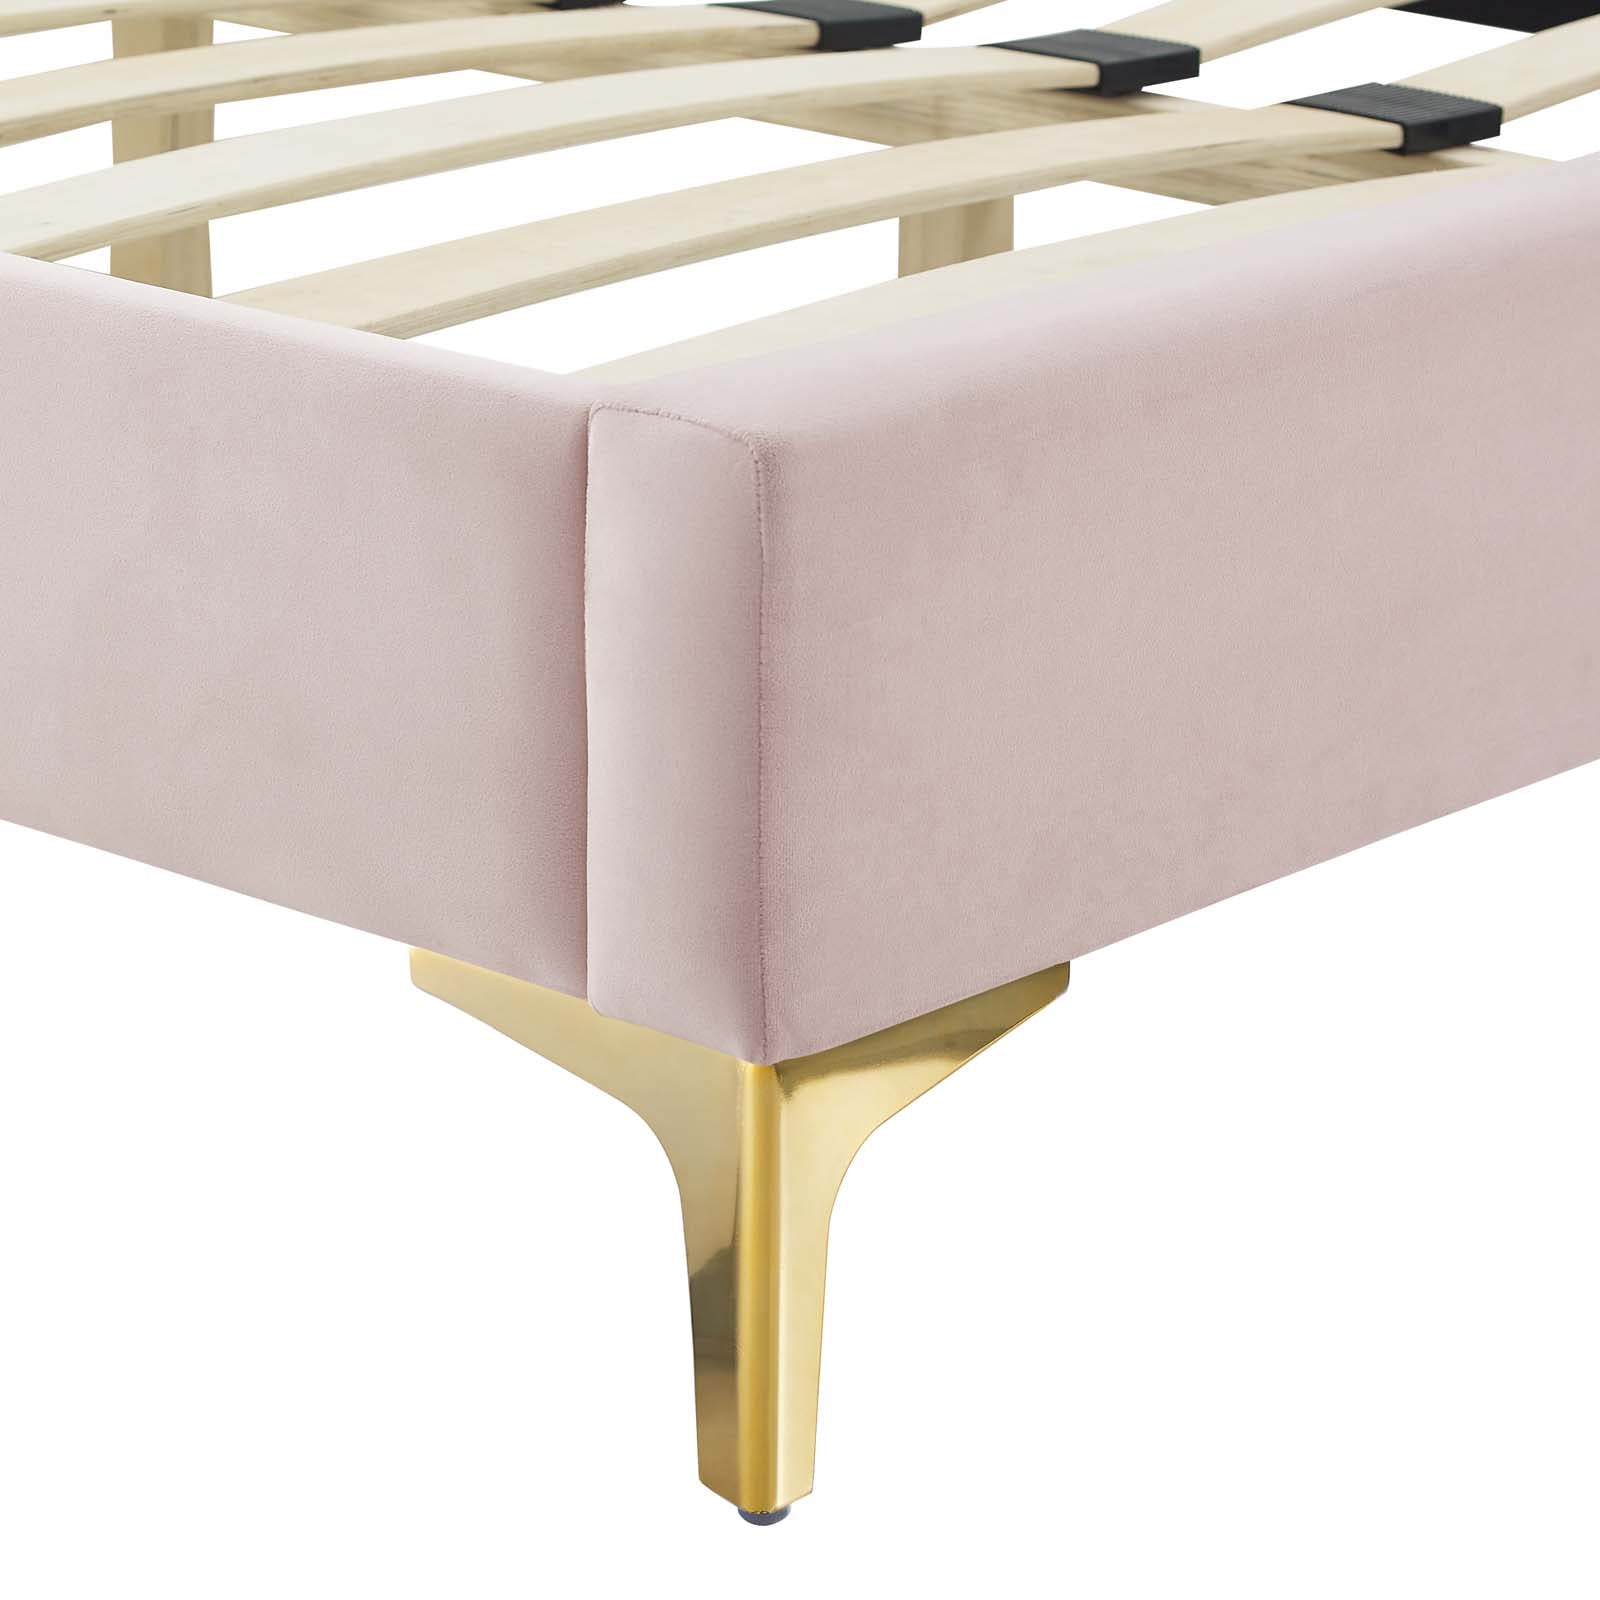 Phillipa Performance Velvet Platform Bed with Gold Metal Legs - East Shore Modern Home Furnishings